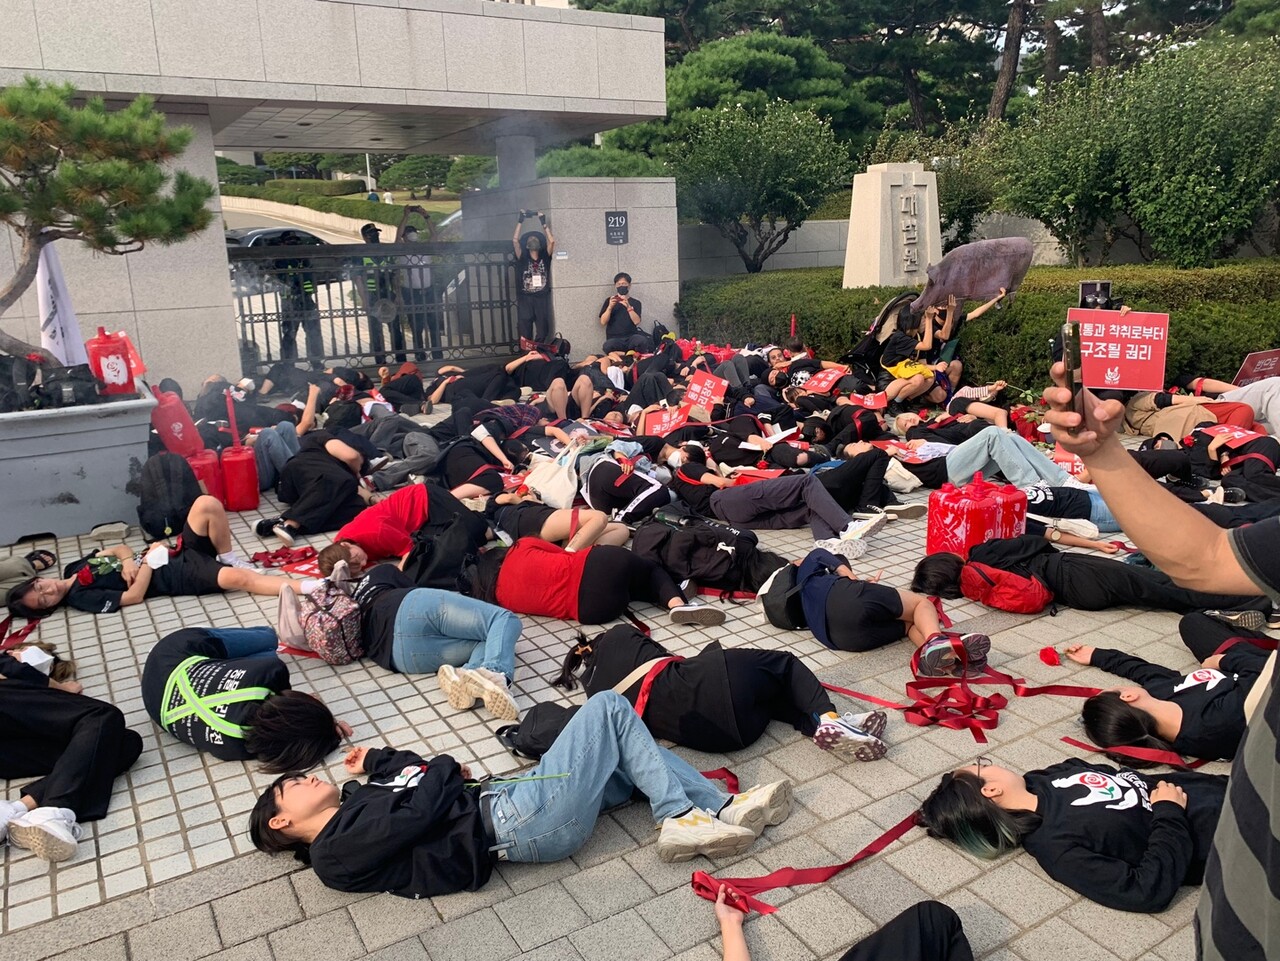 1001 동물권리장전행진 참가자들이 서울 서초동 대법원 정문 앞에서 붉은색 끈을 던진 뒤 바닥에 누워 도살장을 재연하고 있다. 목은수 기자